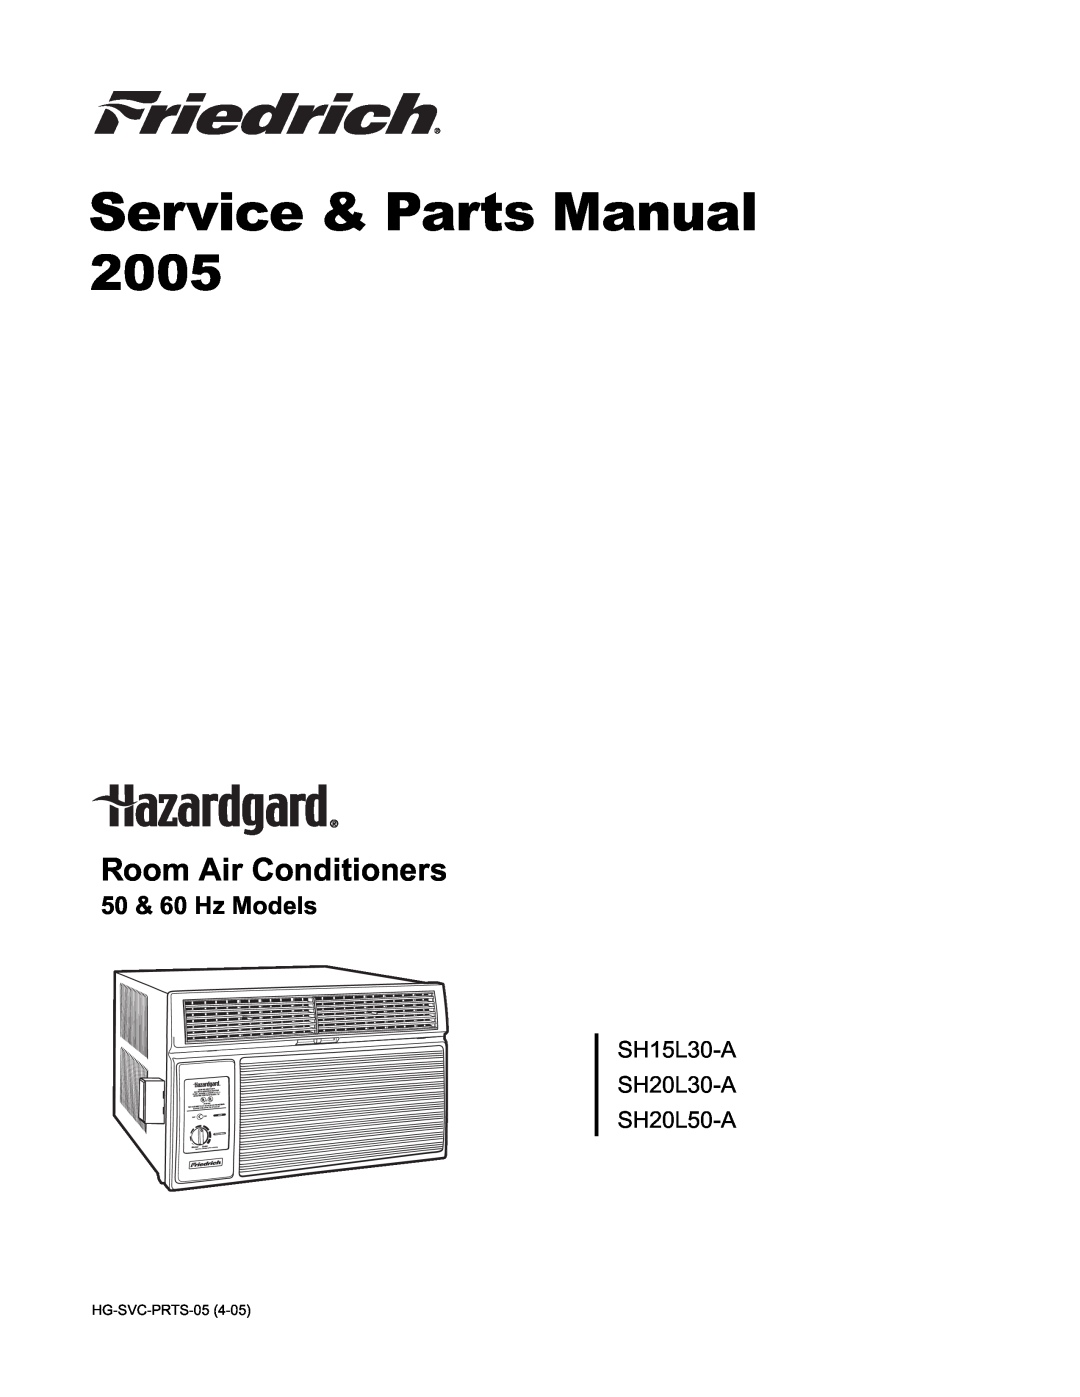 Friedrich SH20L30-A, SH20L50-A, SH15L30-A manual Service & Parts Manual, 2005, Room Air Conditioners, 50 & 60 Hz Models 